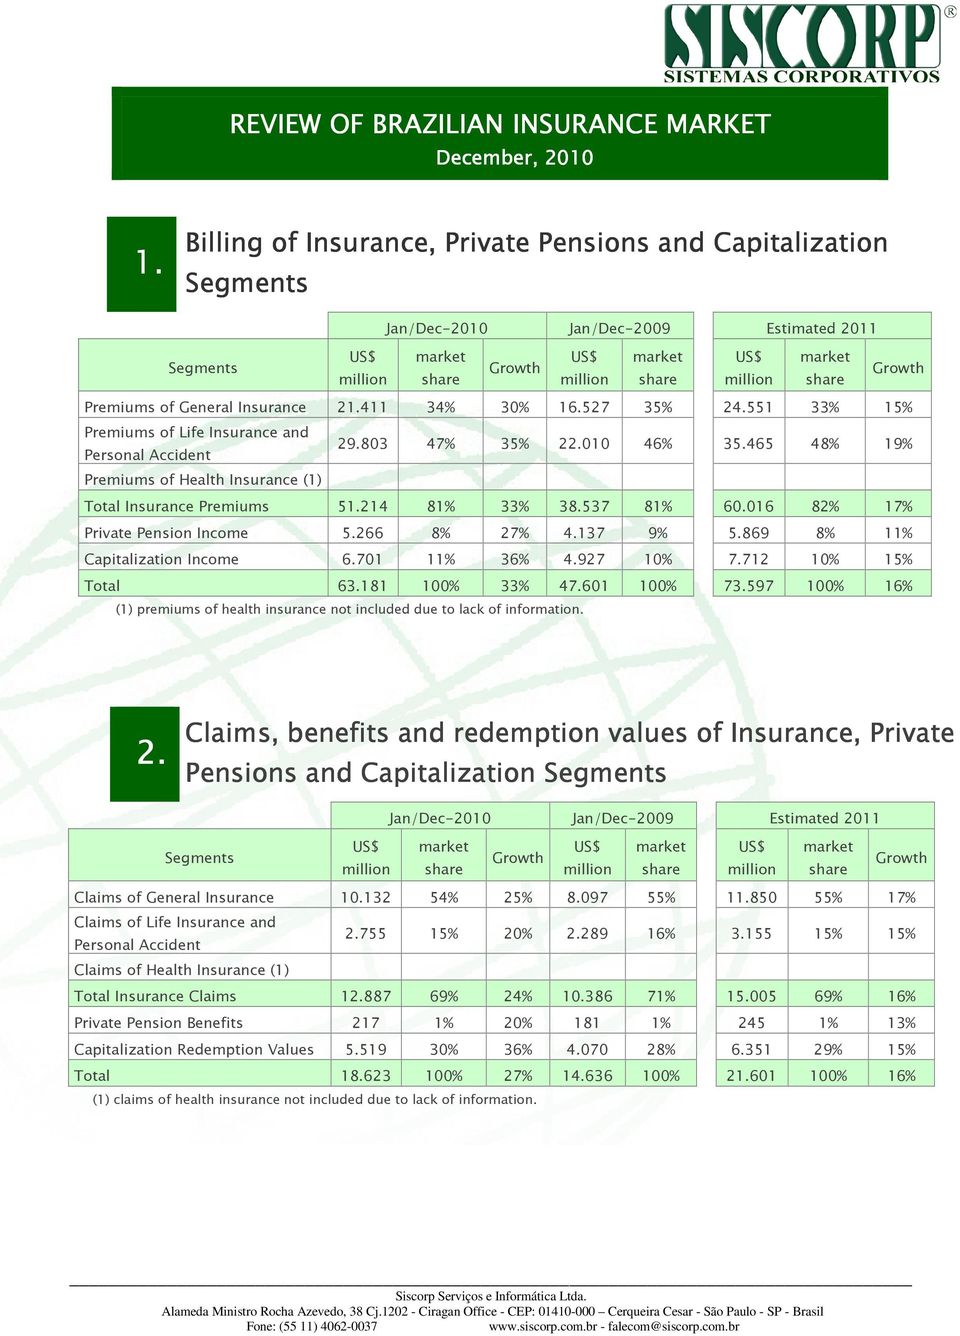 016 82% 17% Private Pension Income 5.266 8% 27% 4.137 9% 5.869 8% 11% Capitalization Income 6.701 11% 36% 4.927 10% 7.712 10% 15% Total 63.181 100% 33% 47.601 100% 73.